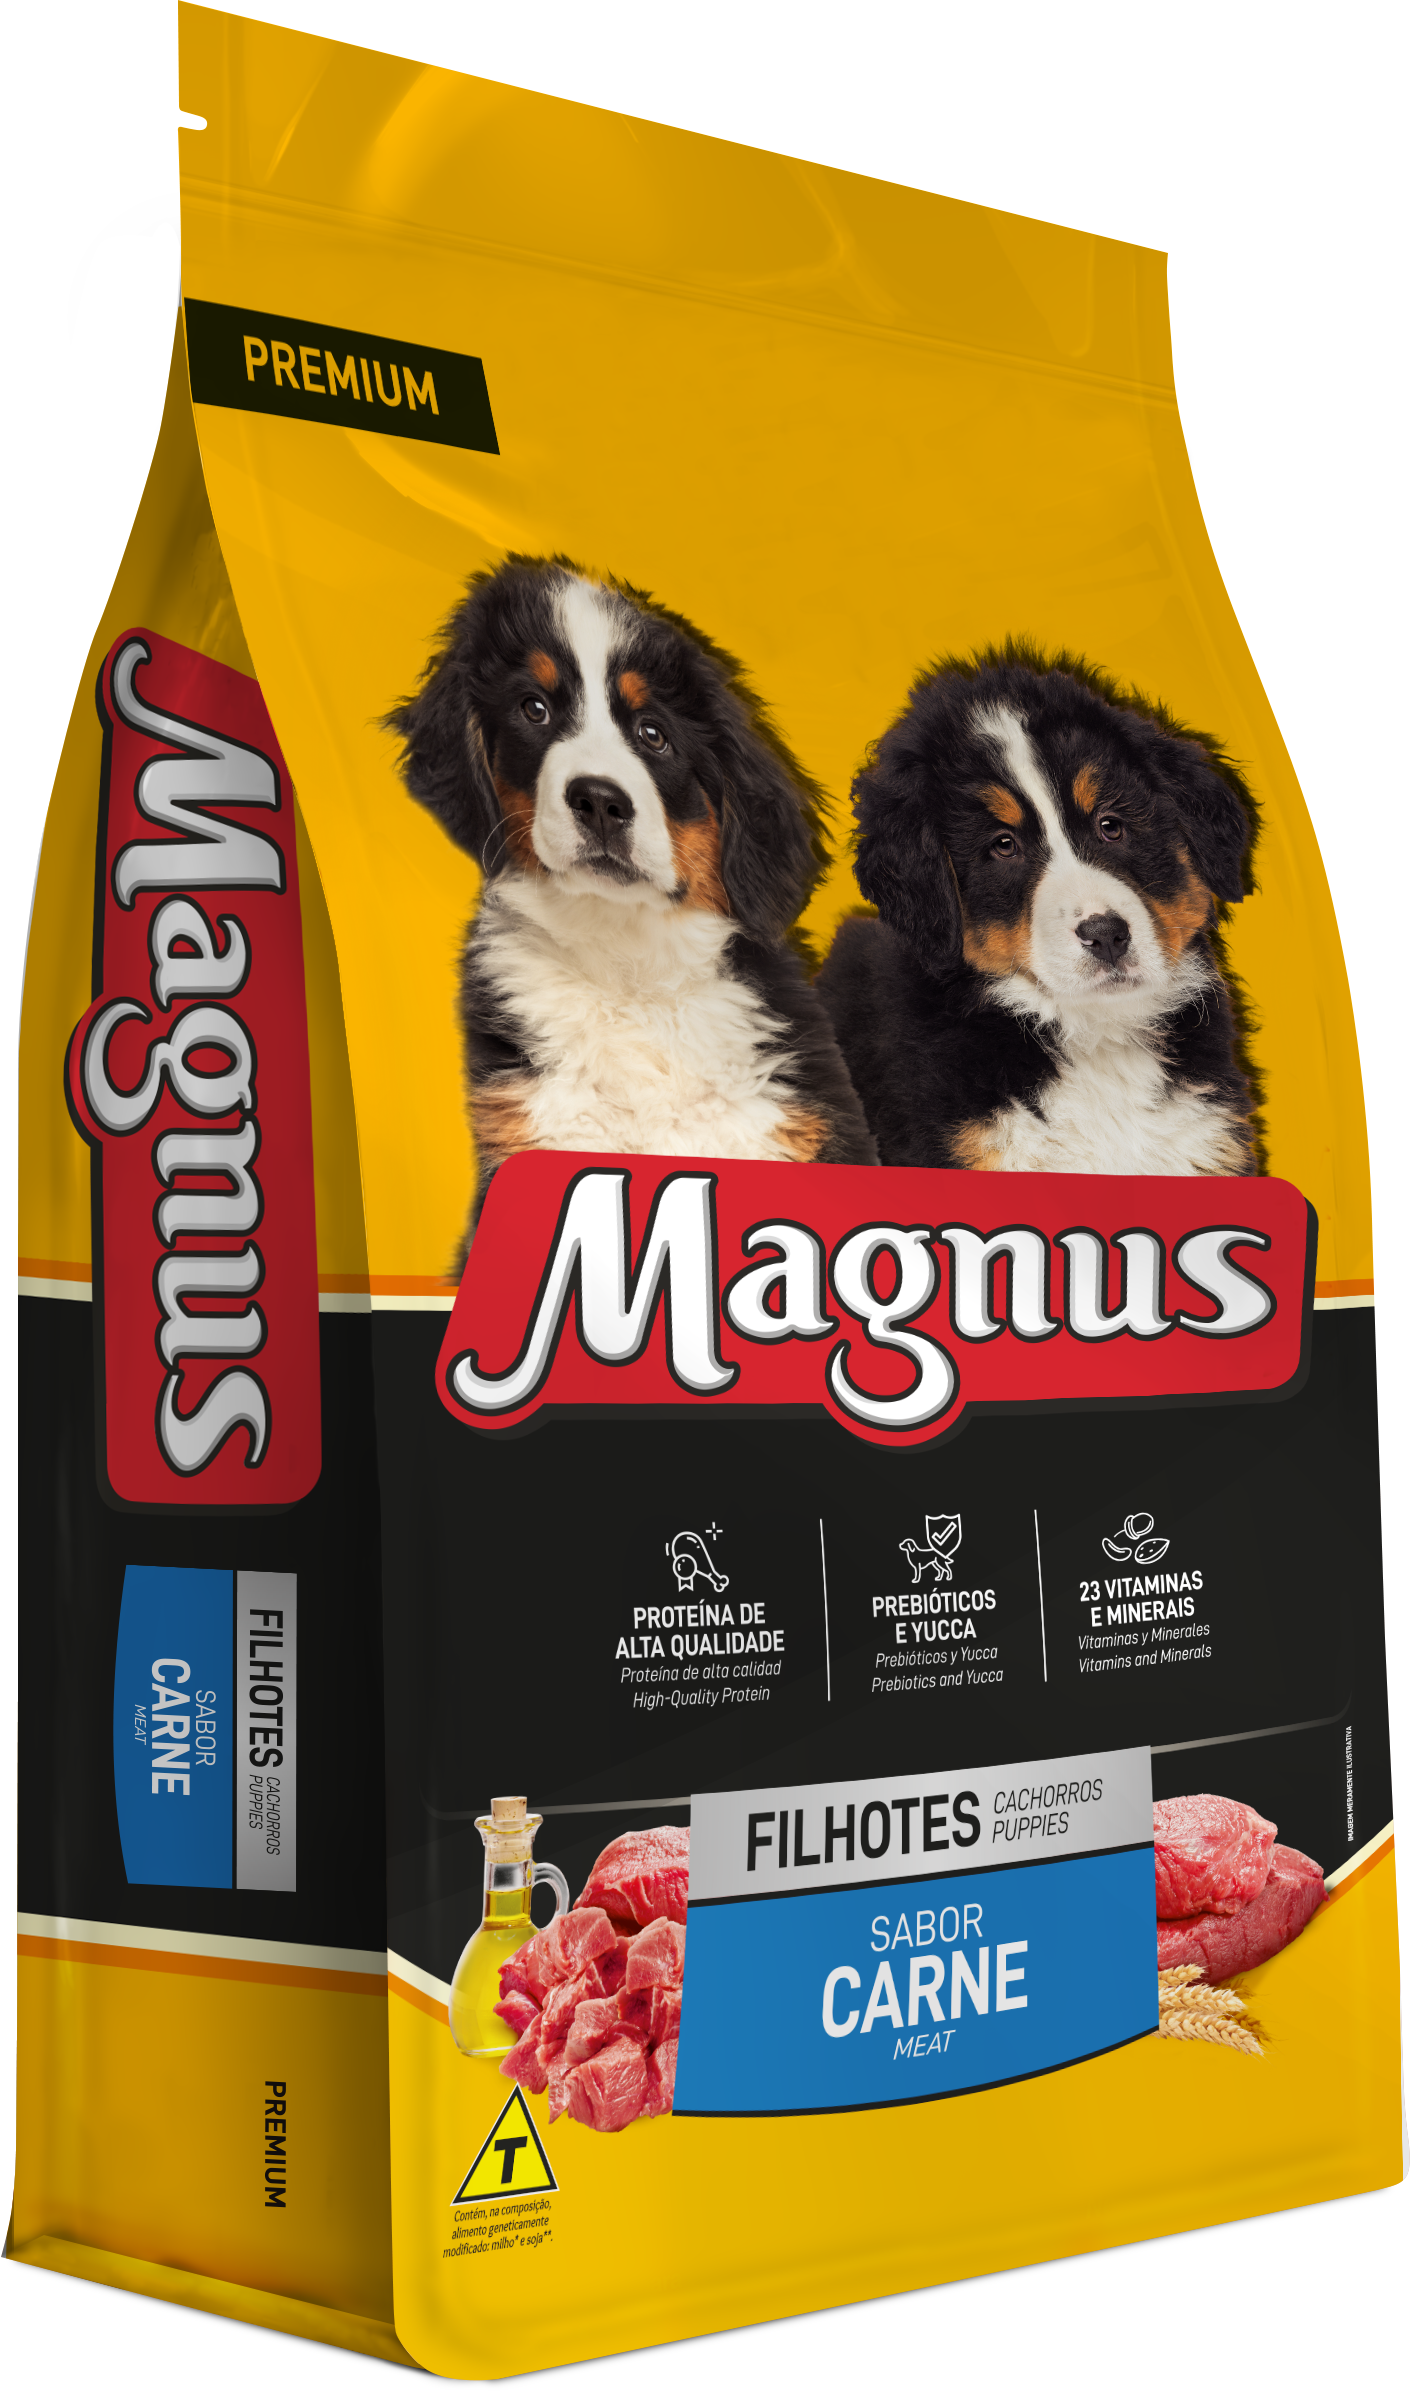 Magnus Premium Filhotes tem mais de 23 vitaminas e minerais para o seu cão